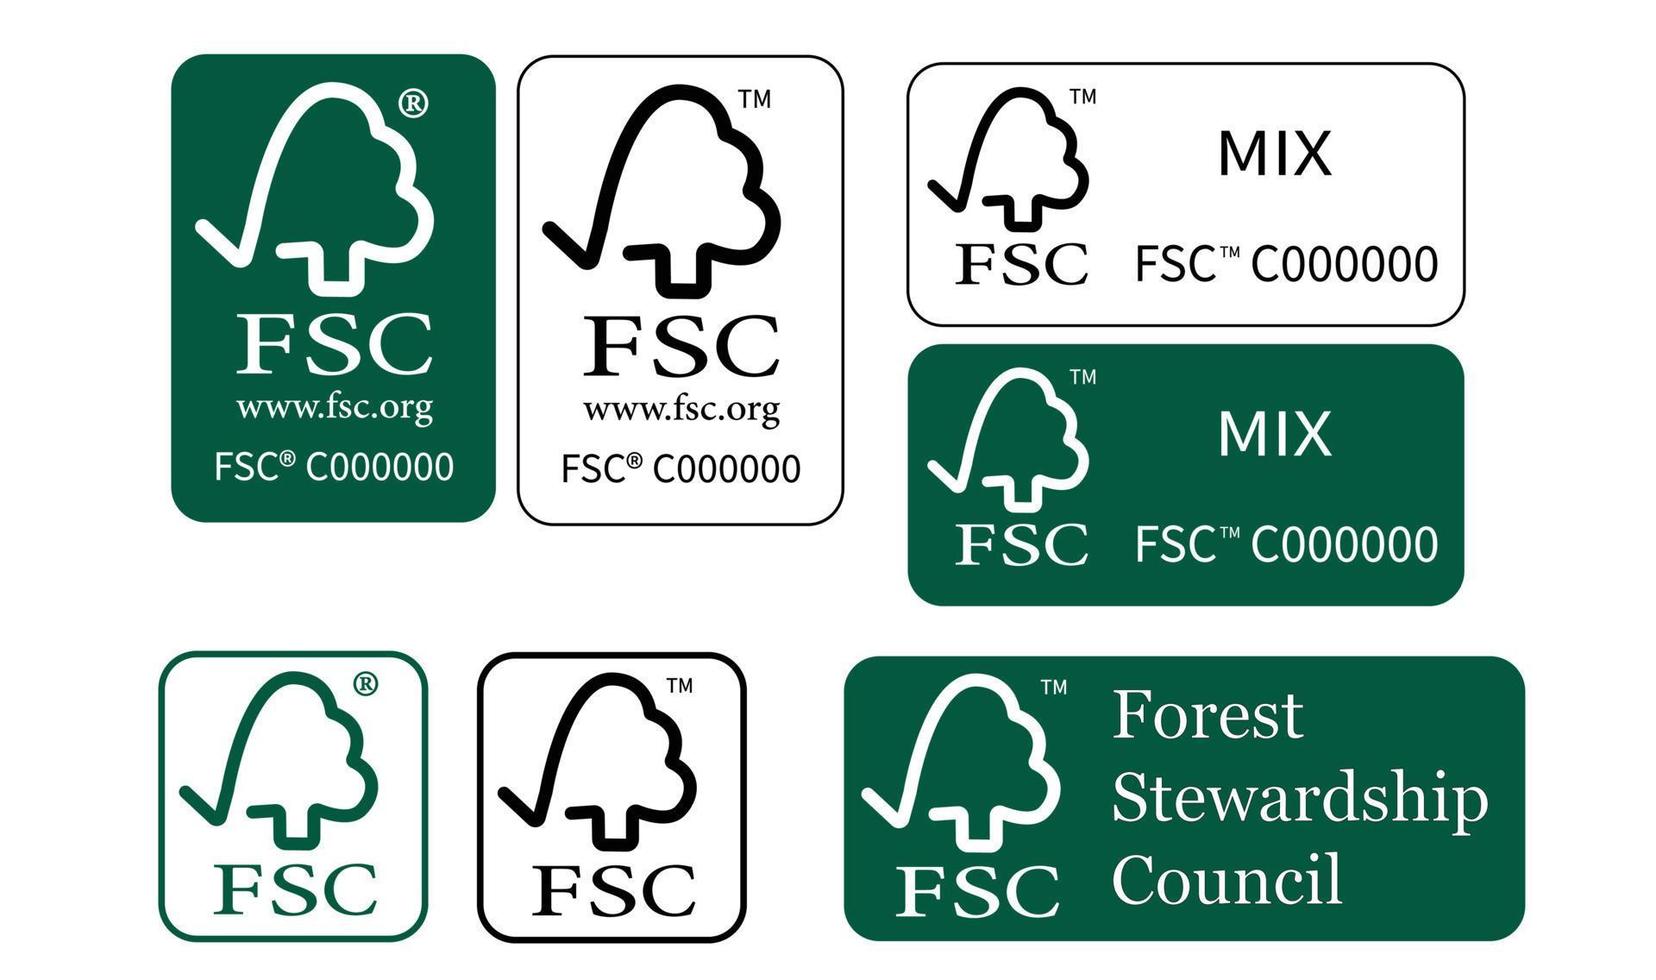 fsc forest stewardship Council logo recyclage eco stock illustration vectorielle variations isolées sur blanc vecteur